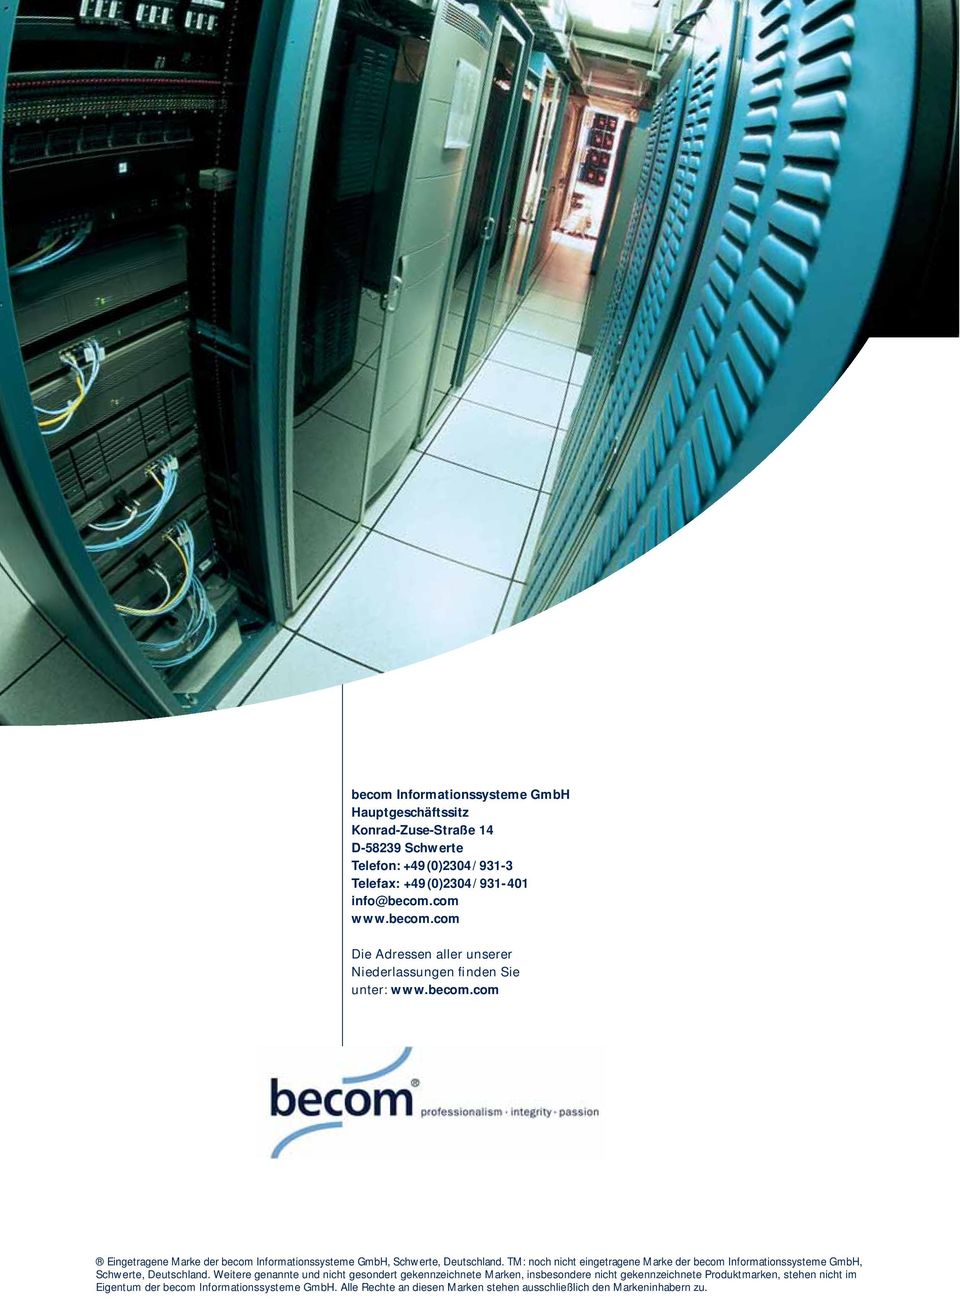 TM: noch nicht eingetragene Marke der becom Informationssysteme GmbH, Schwerte, Deutschland.